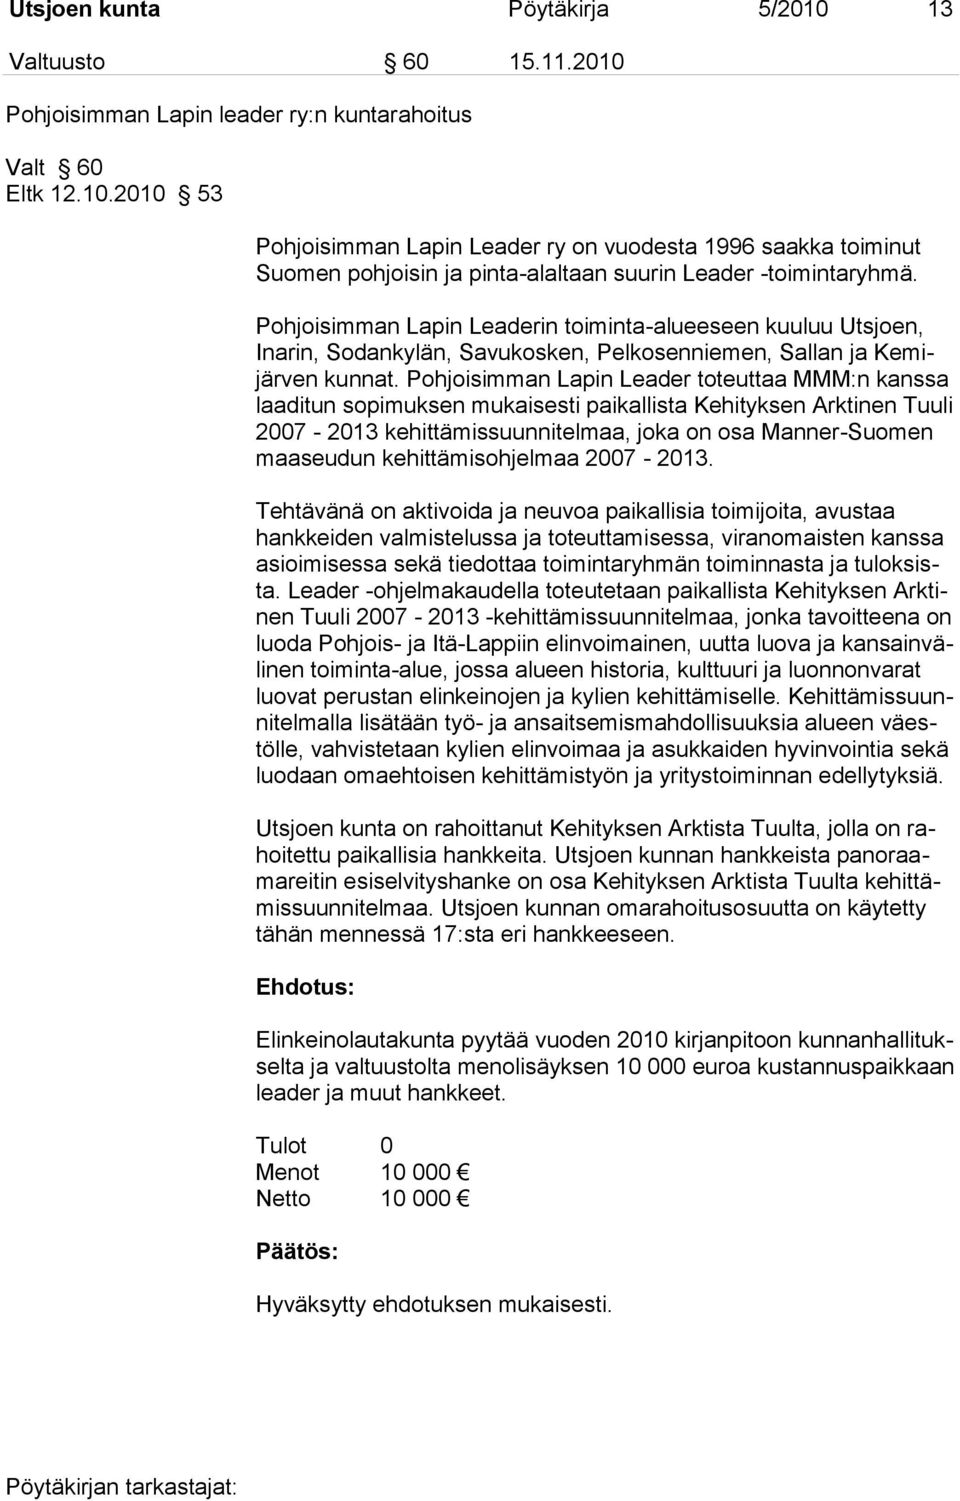 Pohjoisimman Lapin Leader toteuttaa MMM:n kanssa laaditun sopimuksen mukaisesti paikallista Kehityksen Arktinen Tuuli 2007-2013 kehittämissuunnitelmaa, joka on osa Manner-Suomen maaseudun